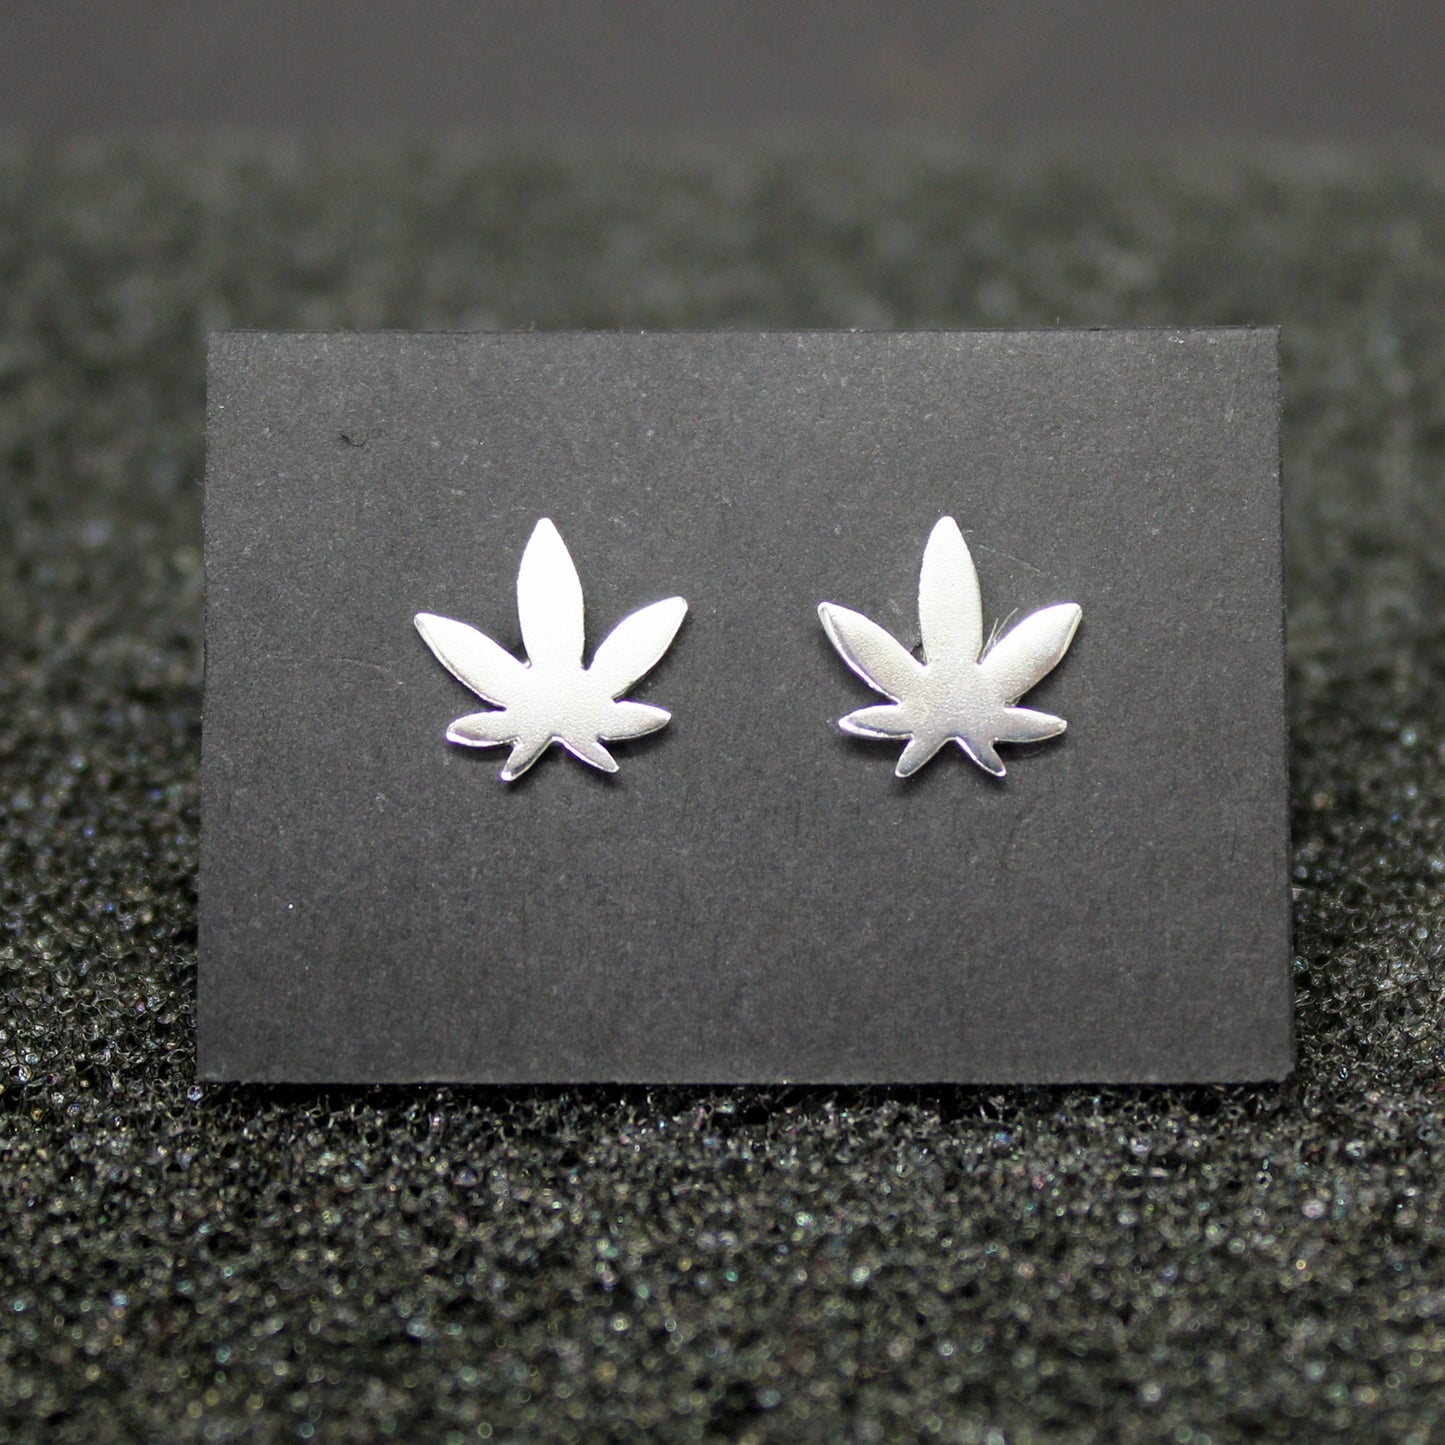 Marijuana leaf earrings in 925 silver